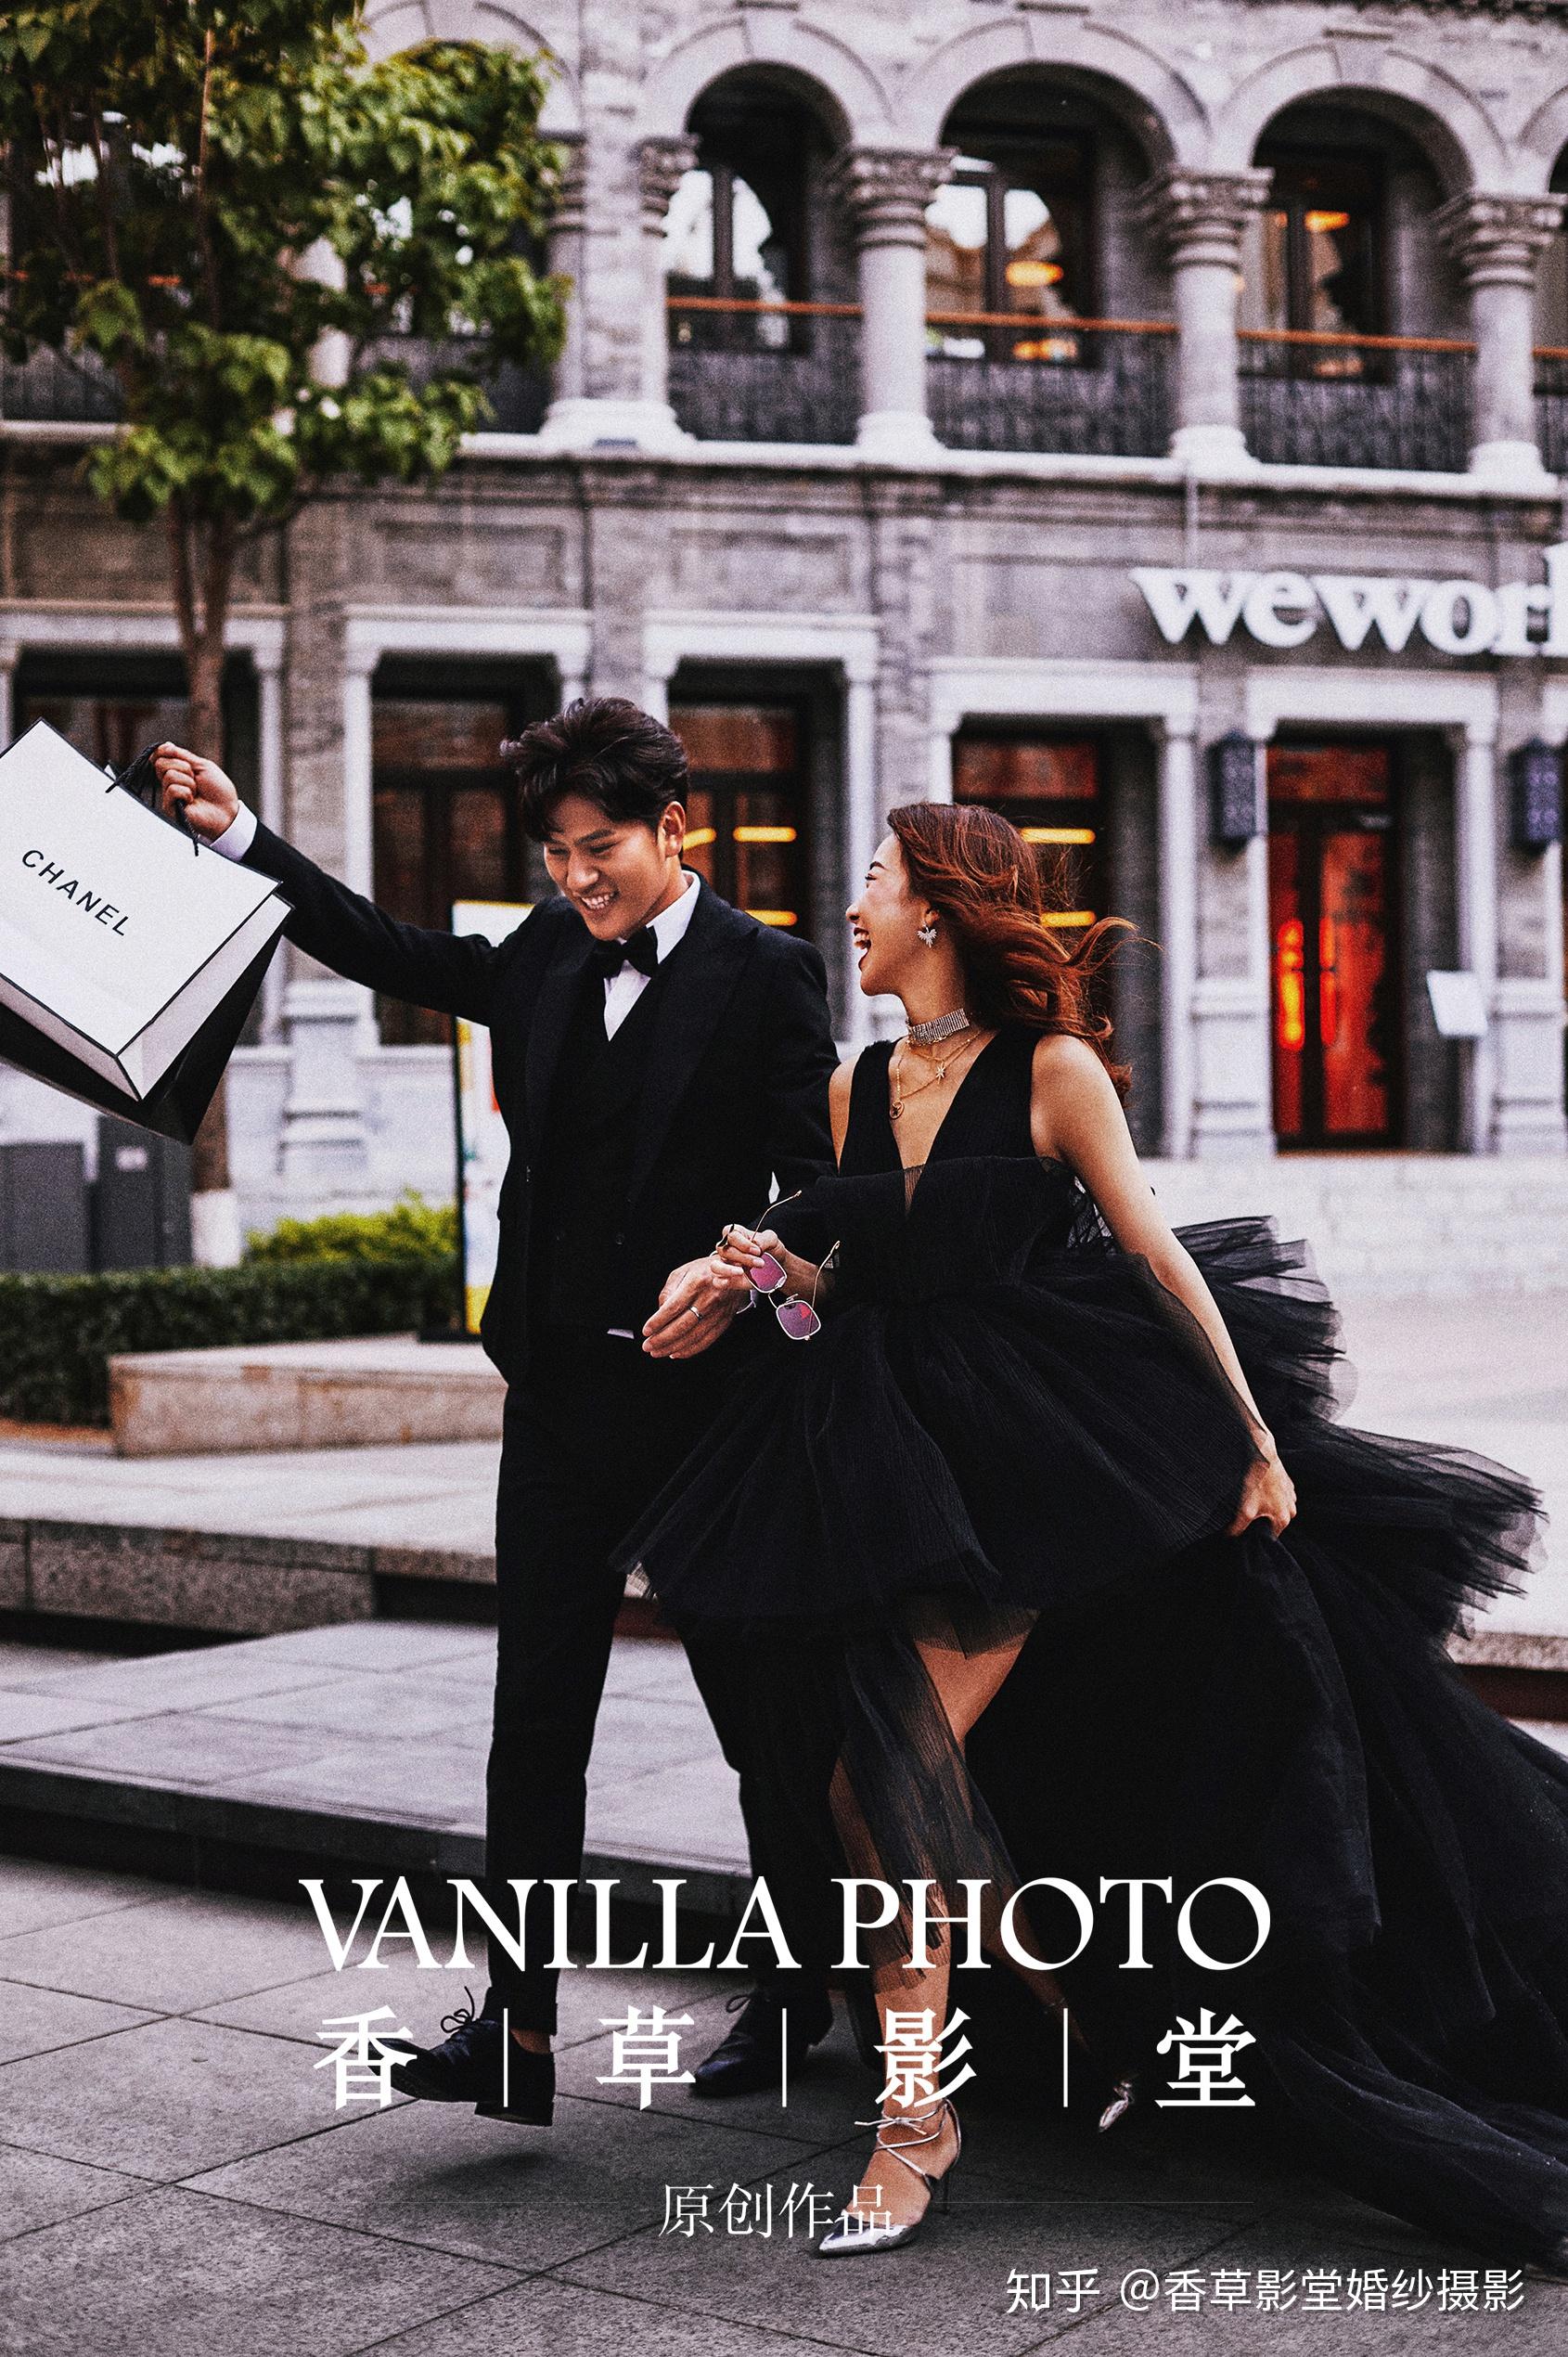 城市街拍《沙面》 - 拍摄地 - 广州婚纱摄影-广州古摄影官网